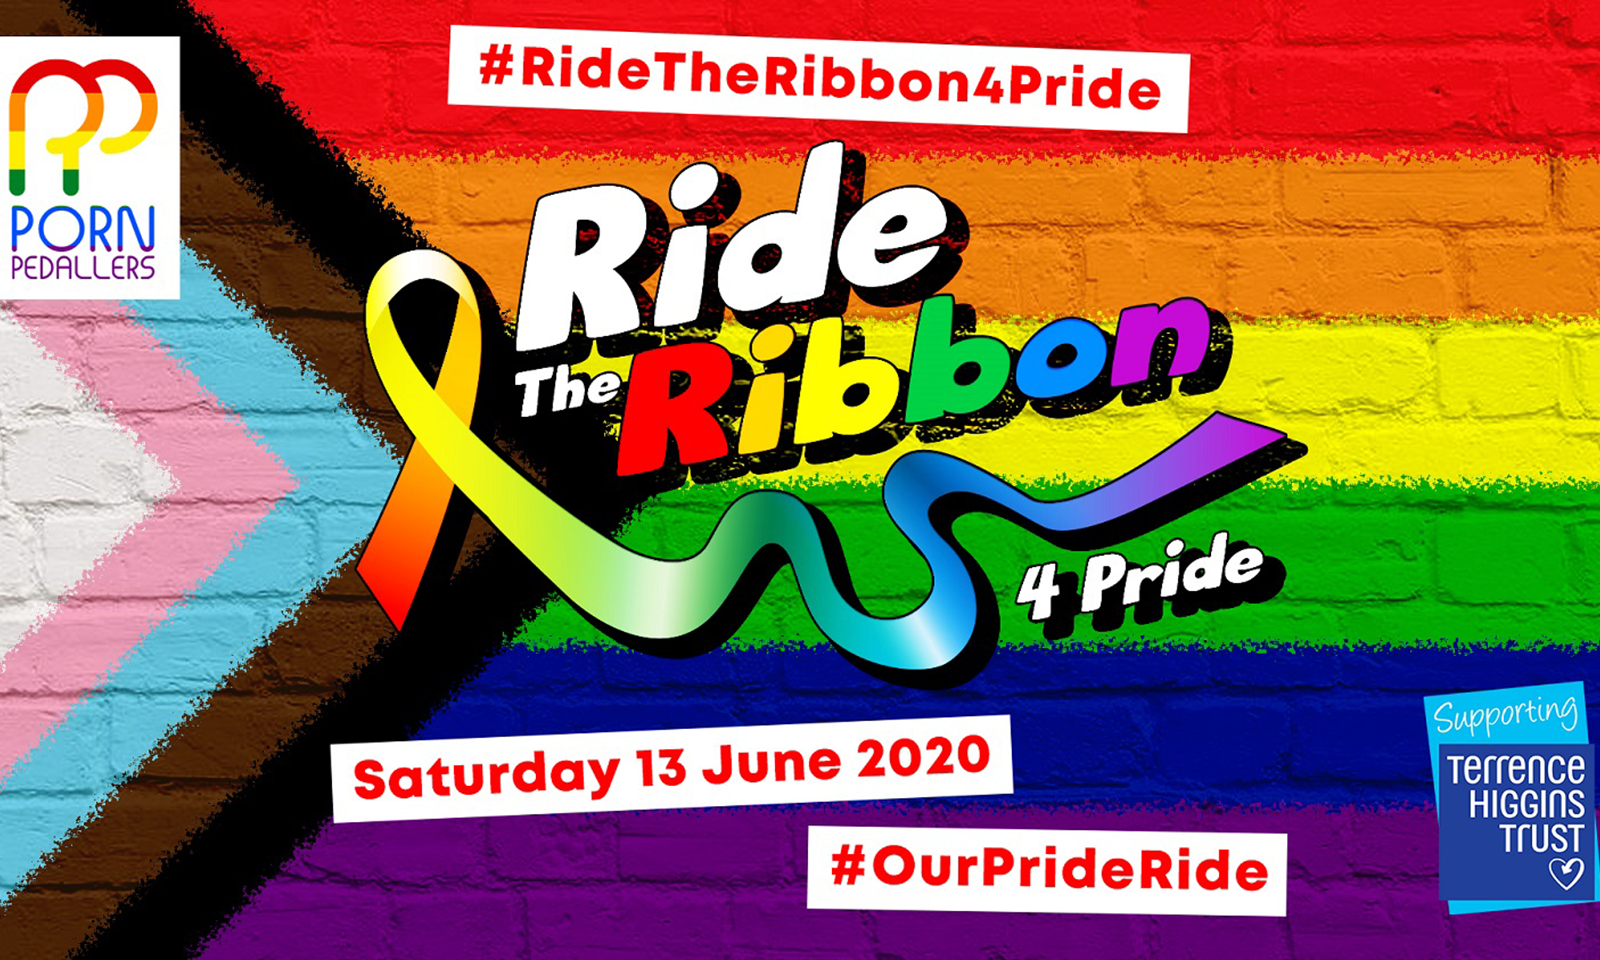 Porn Pedallers Organize ‘Ride for Pride and Inclusivity’